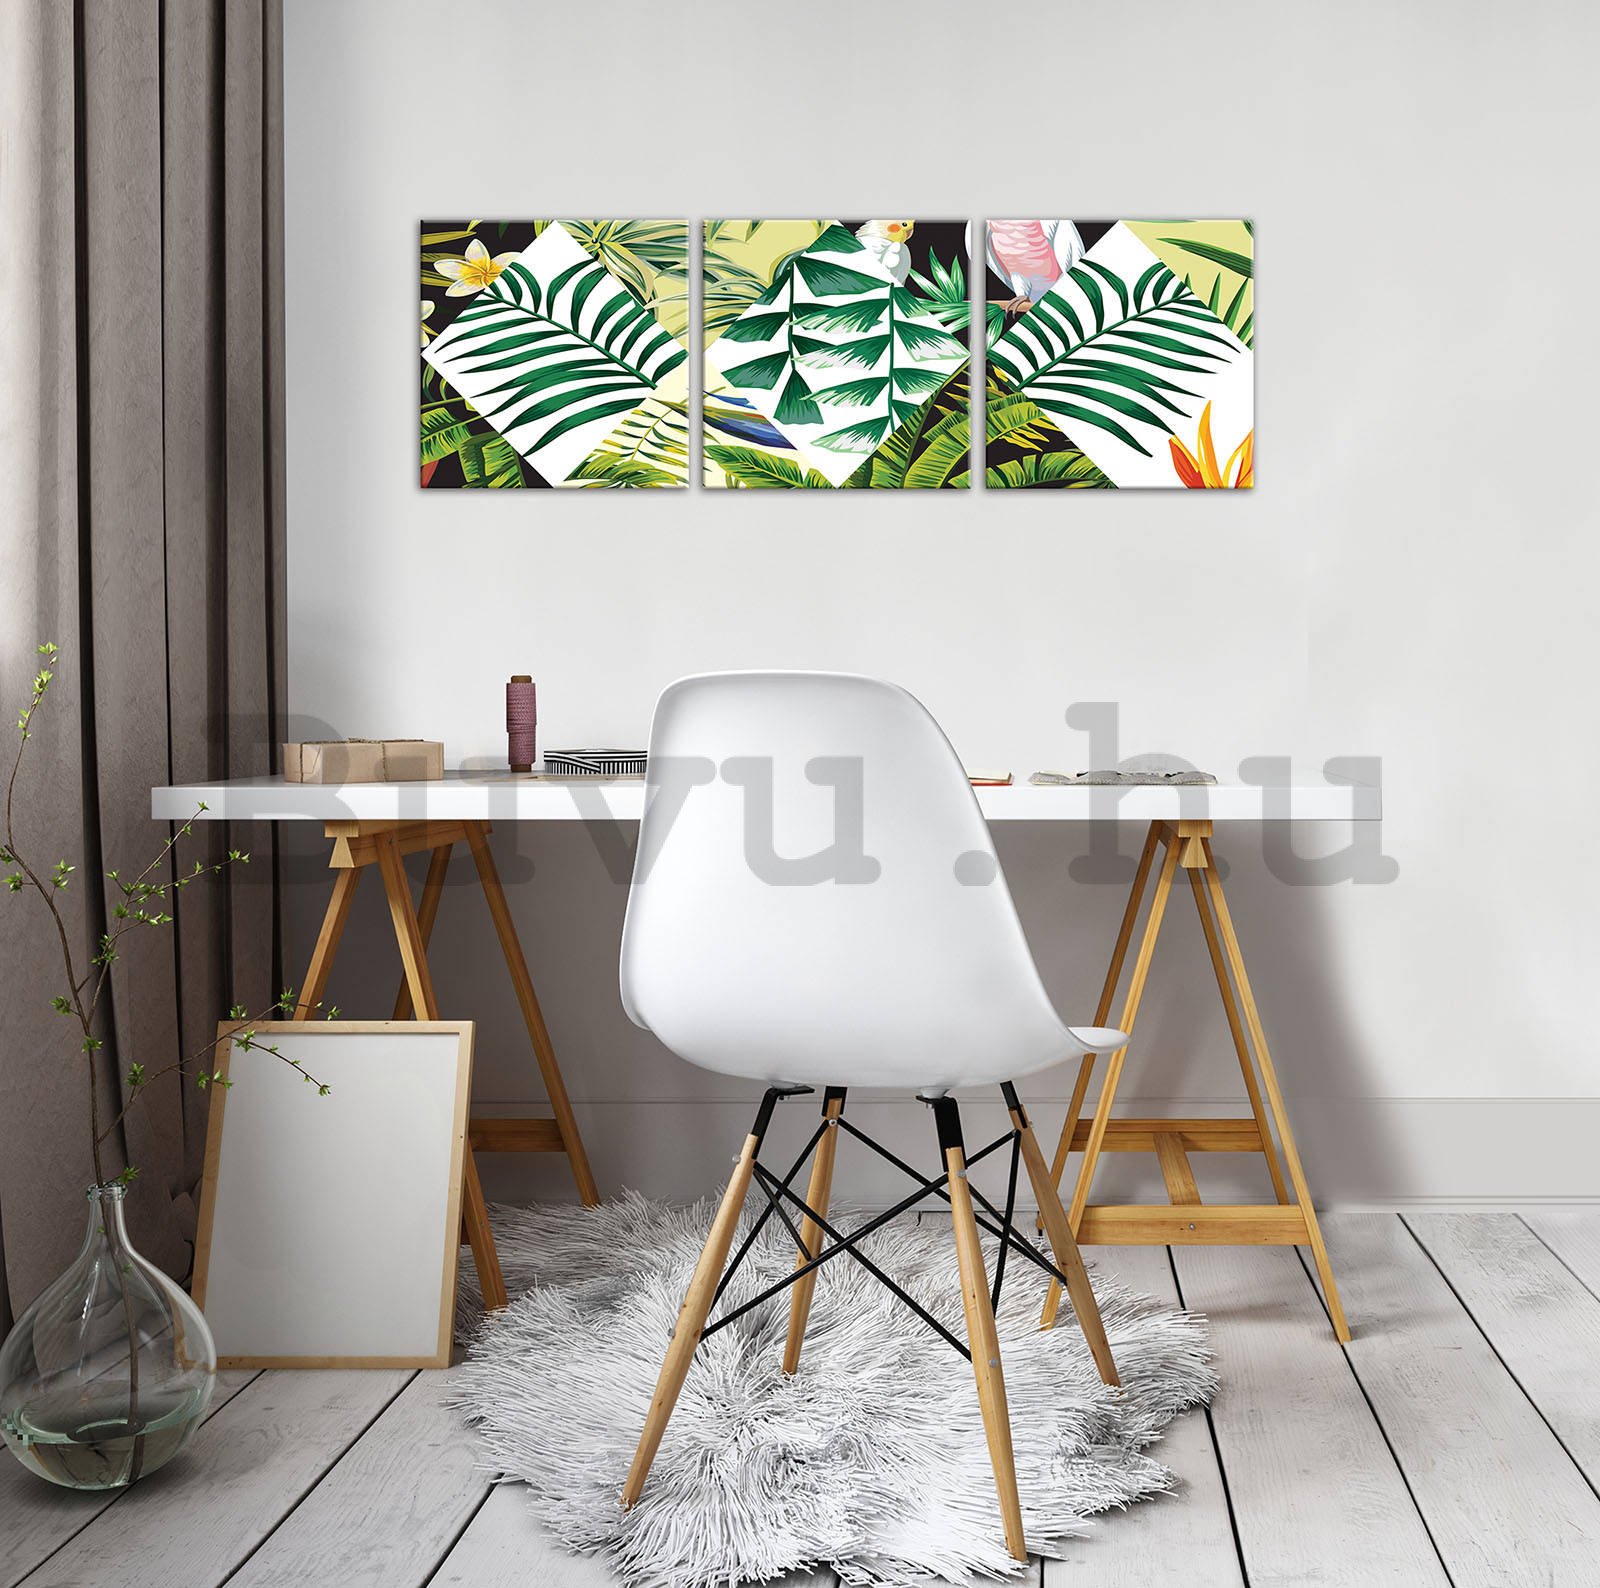 Vászonkép: Festett trópusi növényvilág (2) - készlet 3db 25x25cm